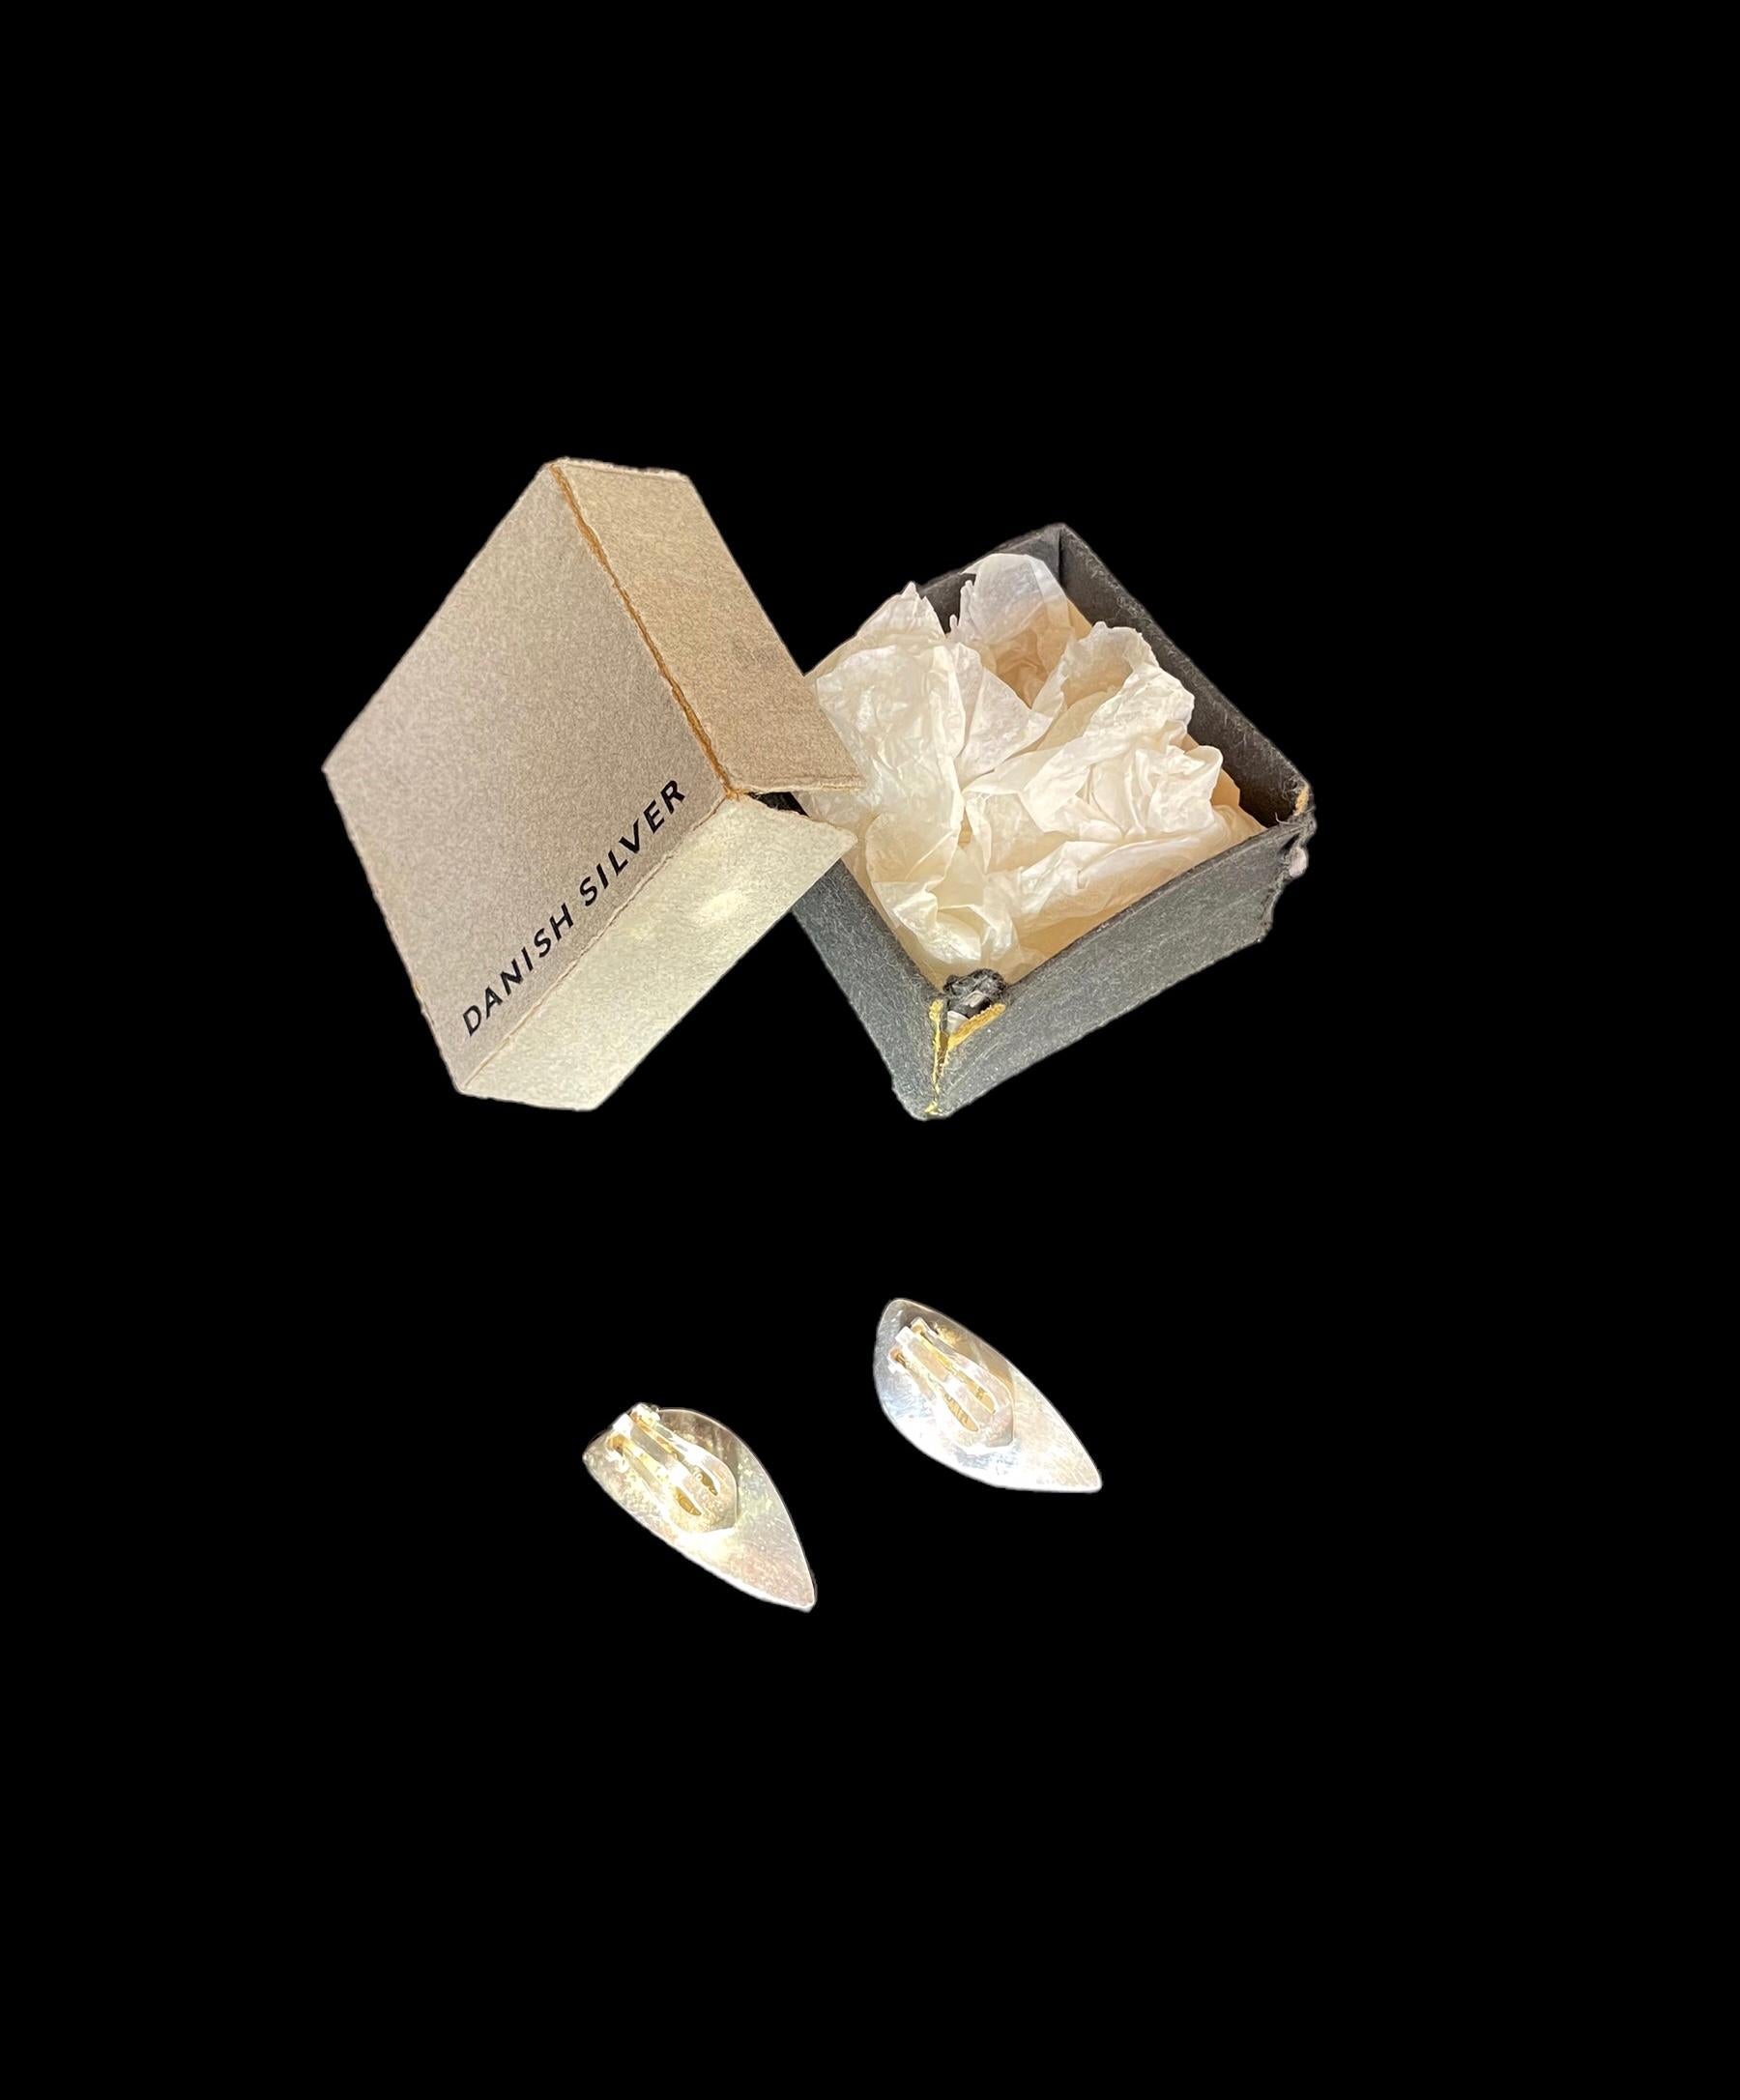 1960er Jahre Hans Hansen Silberohrringe, Dänemark 318 entworfen von Bent Gabrielsen (1928-2014).
Ein Paar modernistische Blatt-Ohrringe aus massivem Silber. 
Konkave Blattform mit abgeschrägter Kante und Clip-Beschlägen.

HANS HANSEN
Hans Hansen